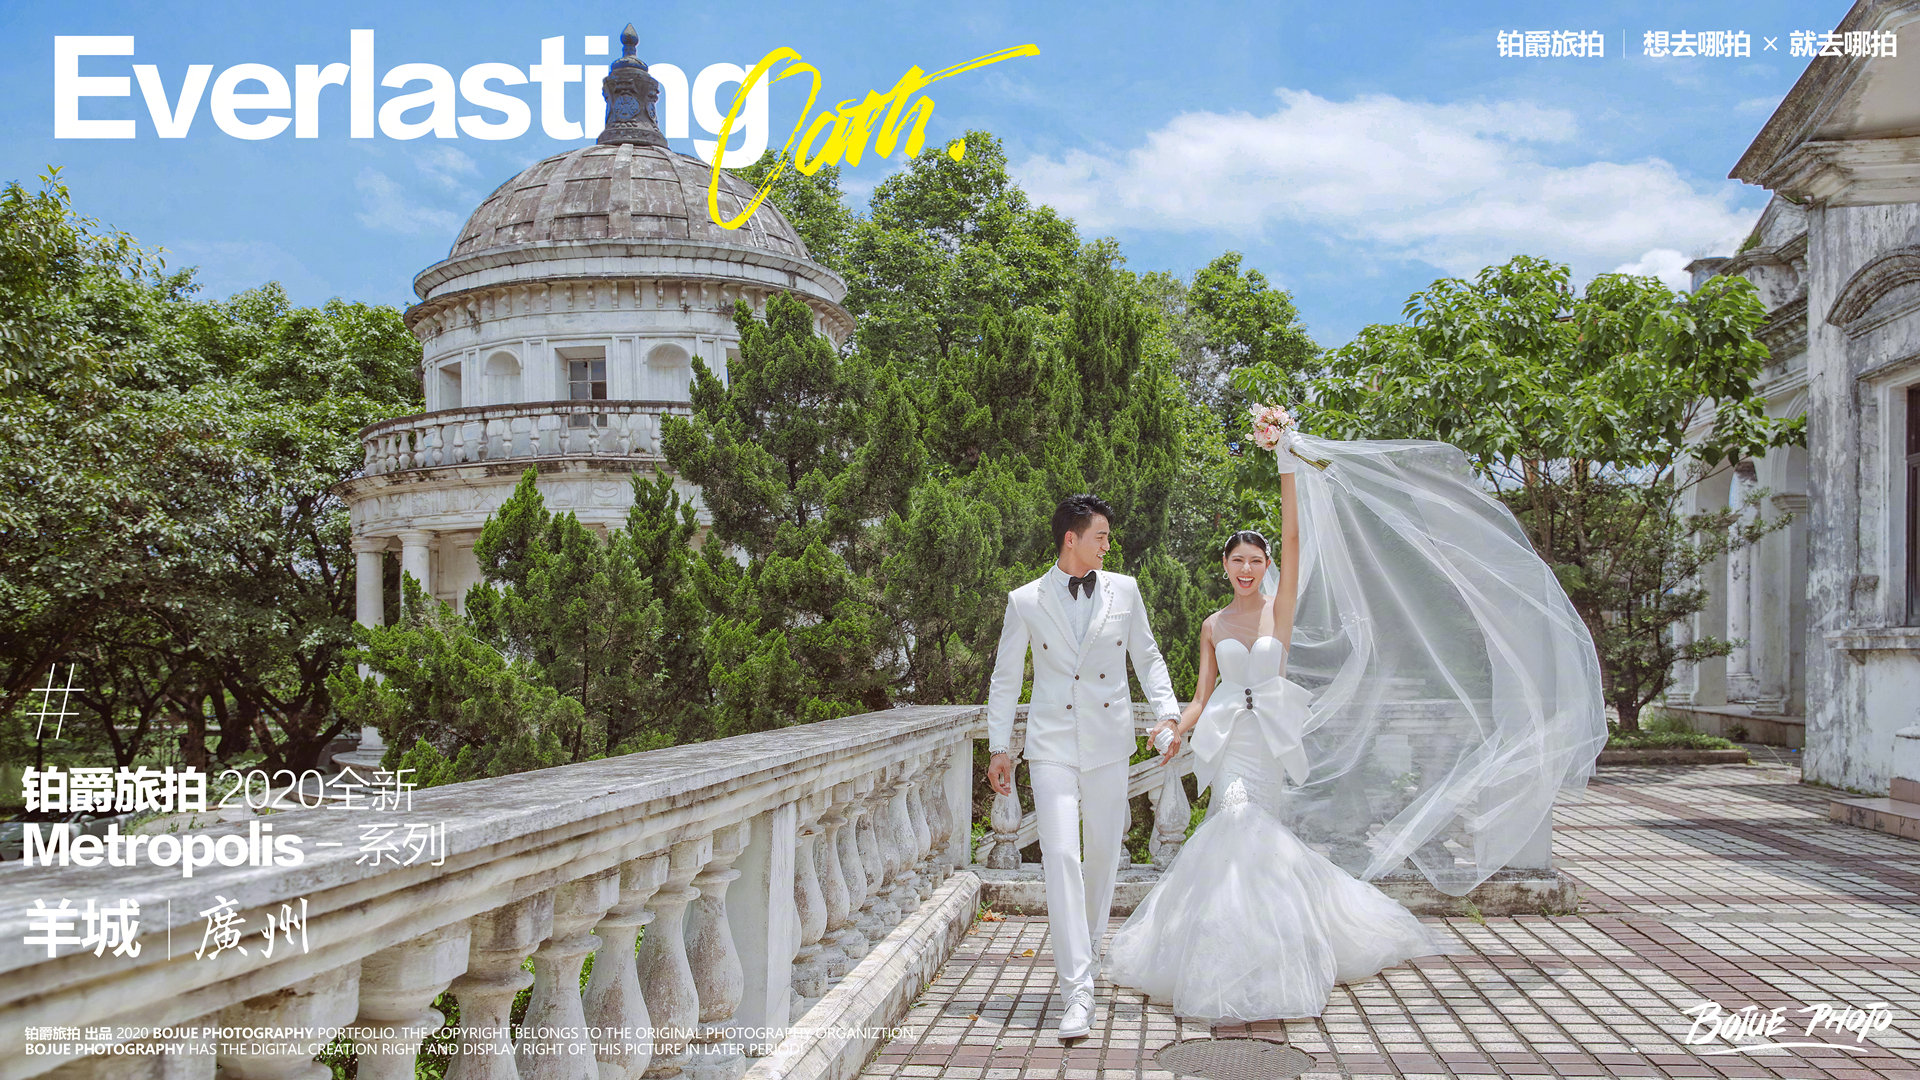 广州旅拍婚纱照攻略详解有吗?几月份去广州旅拍比较好?